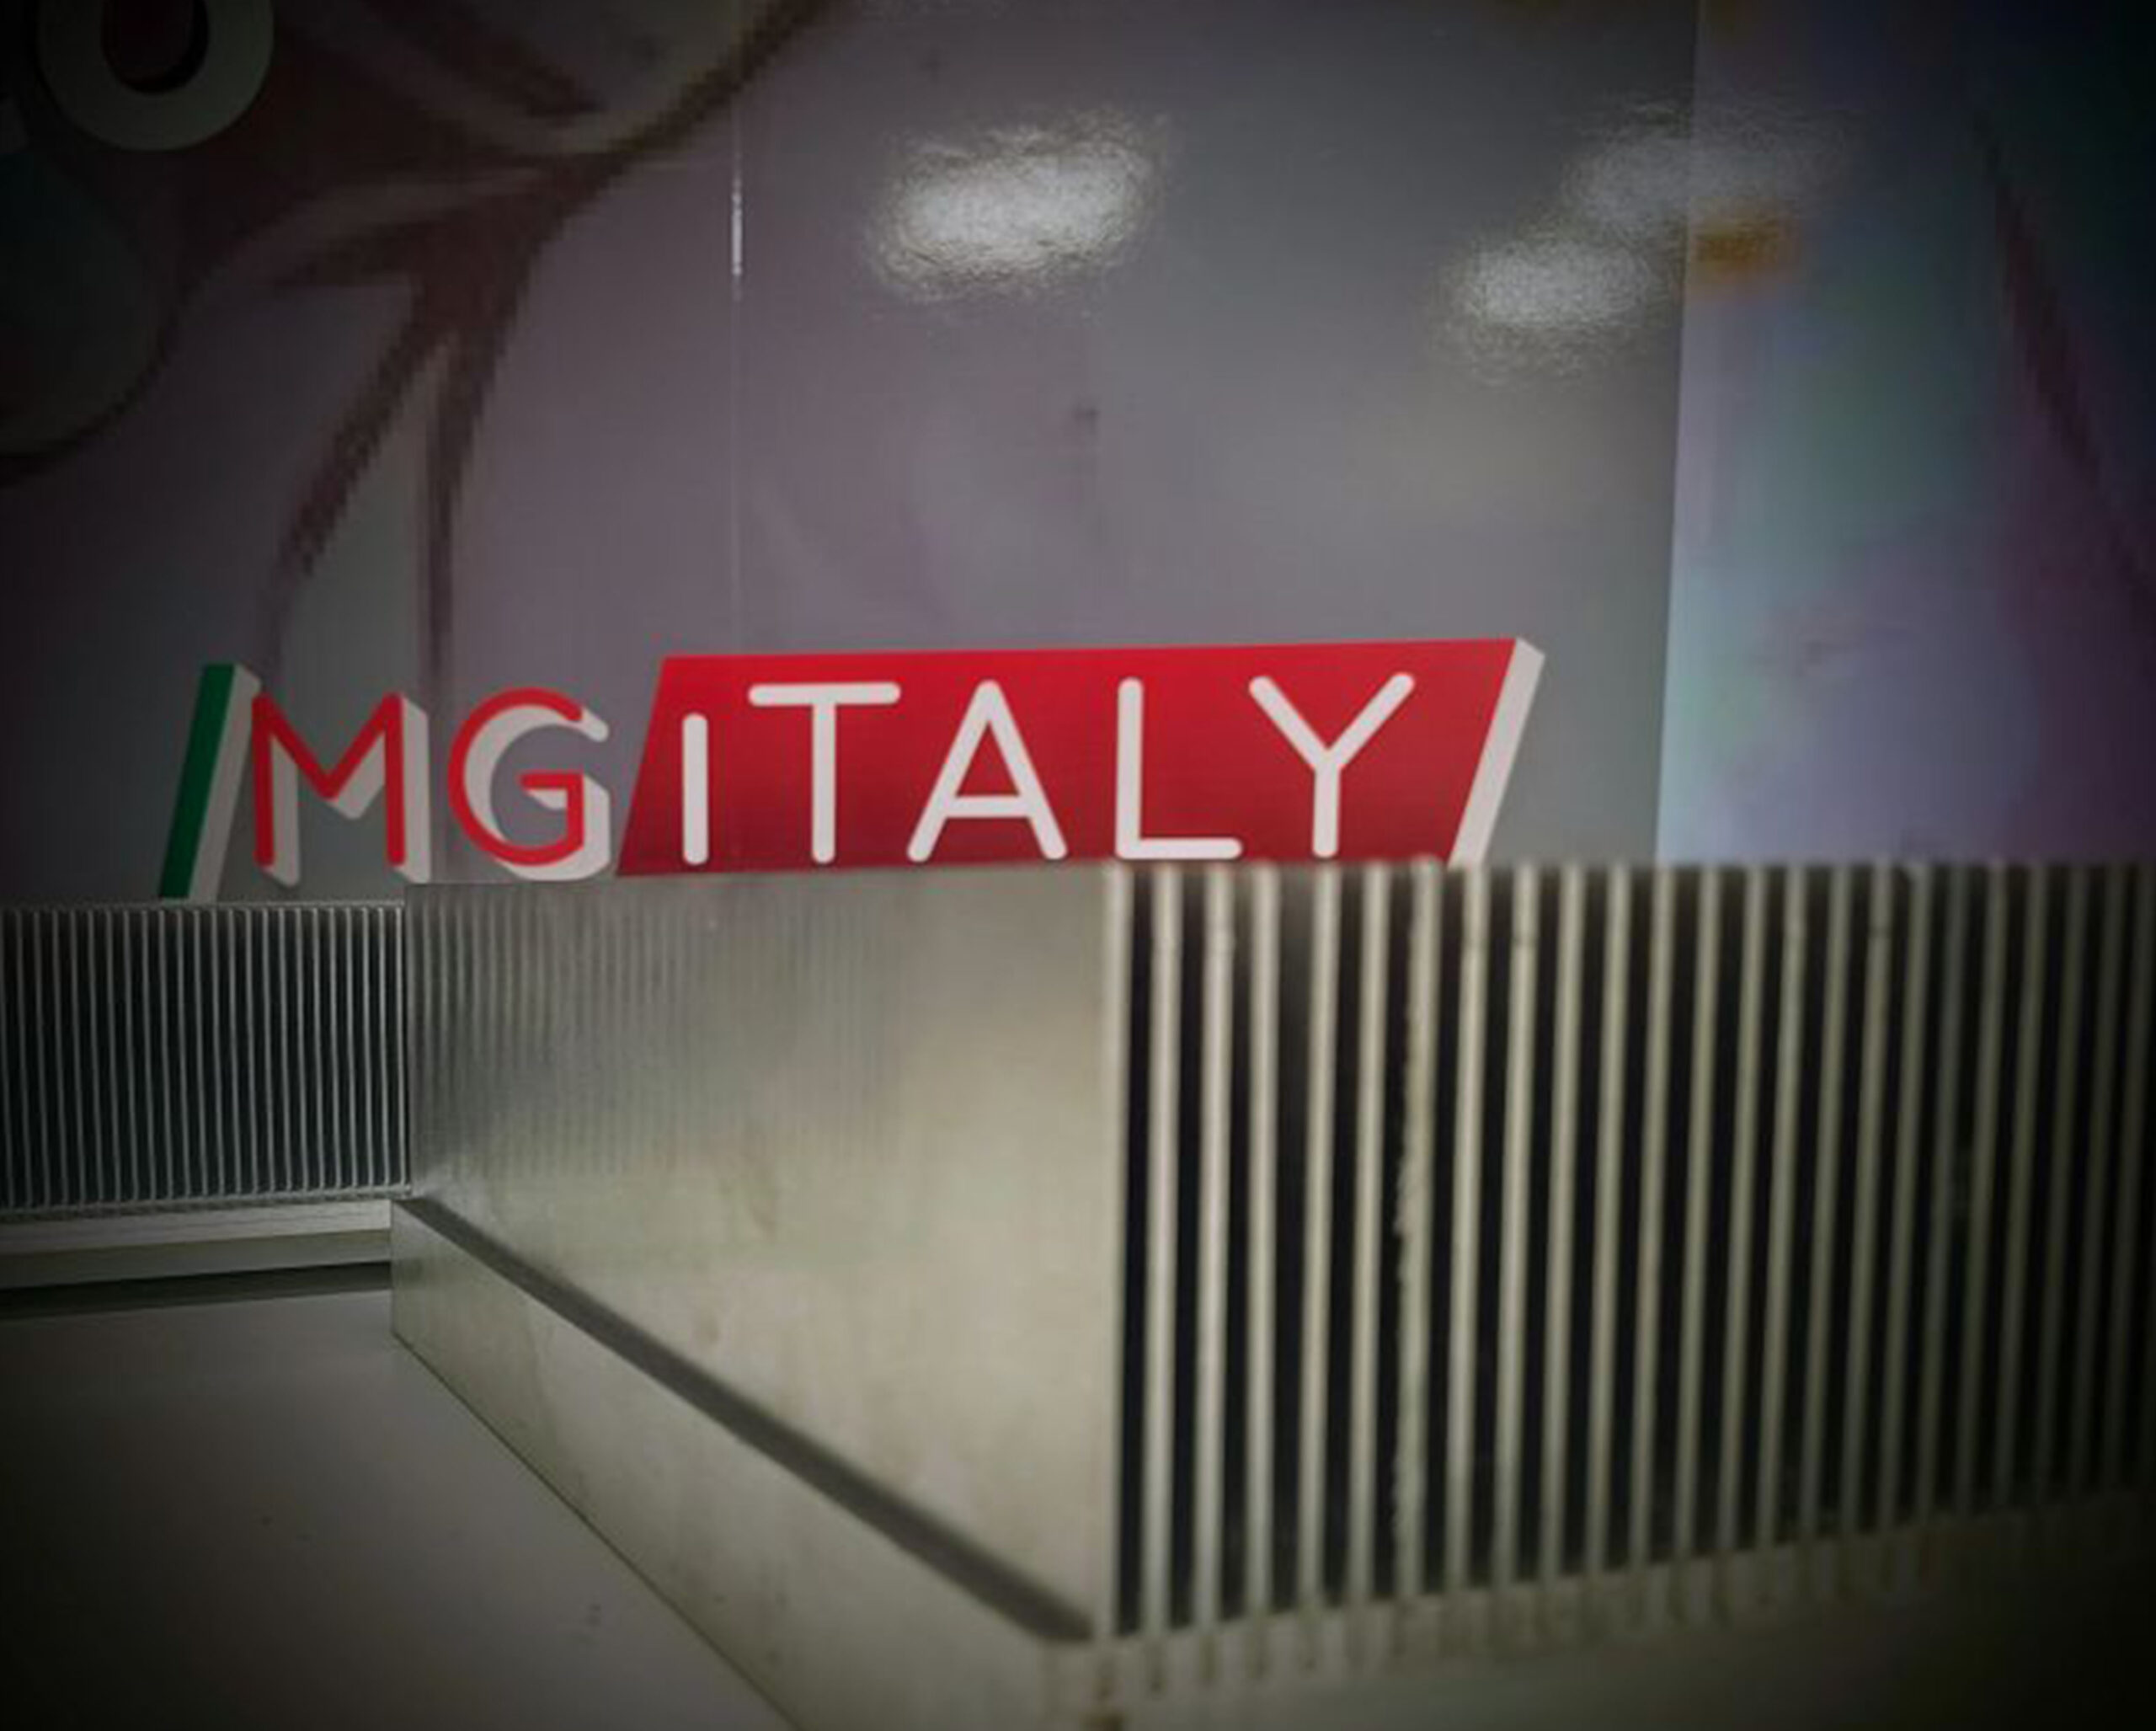 MG ITALIY_tecnologia heat sink